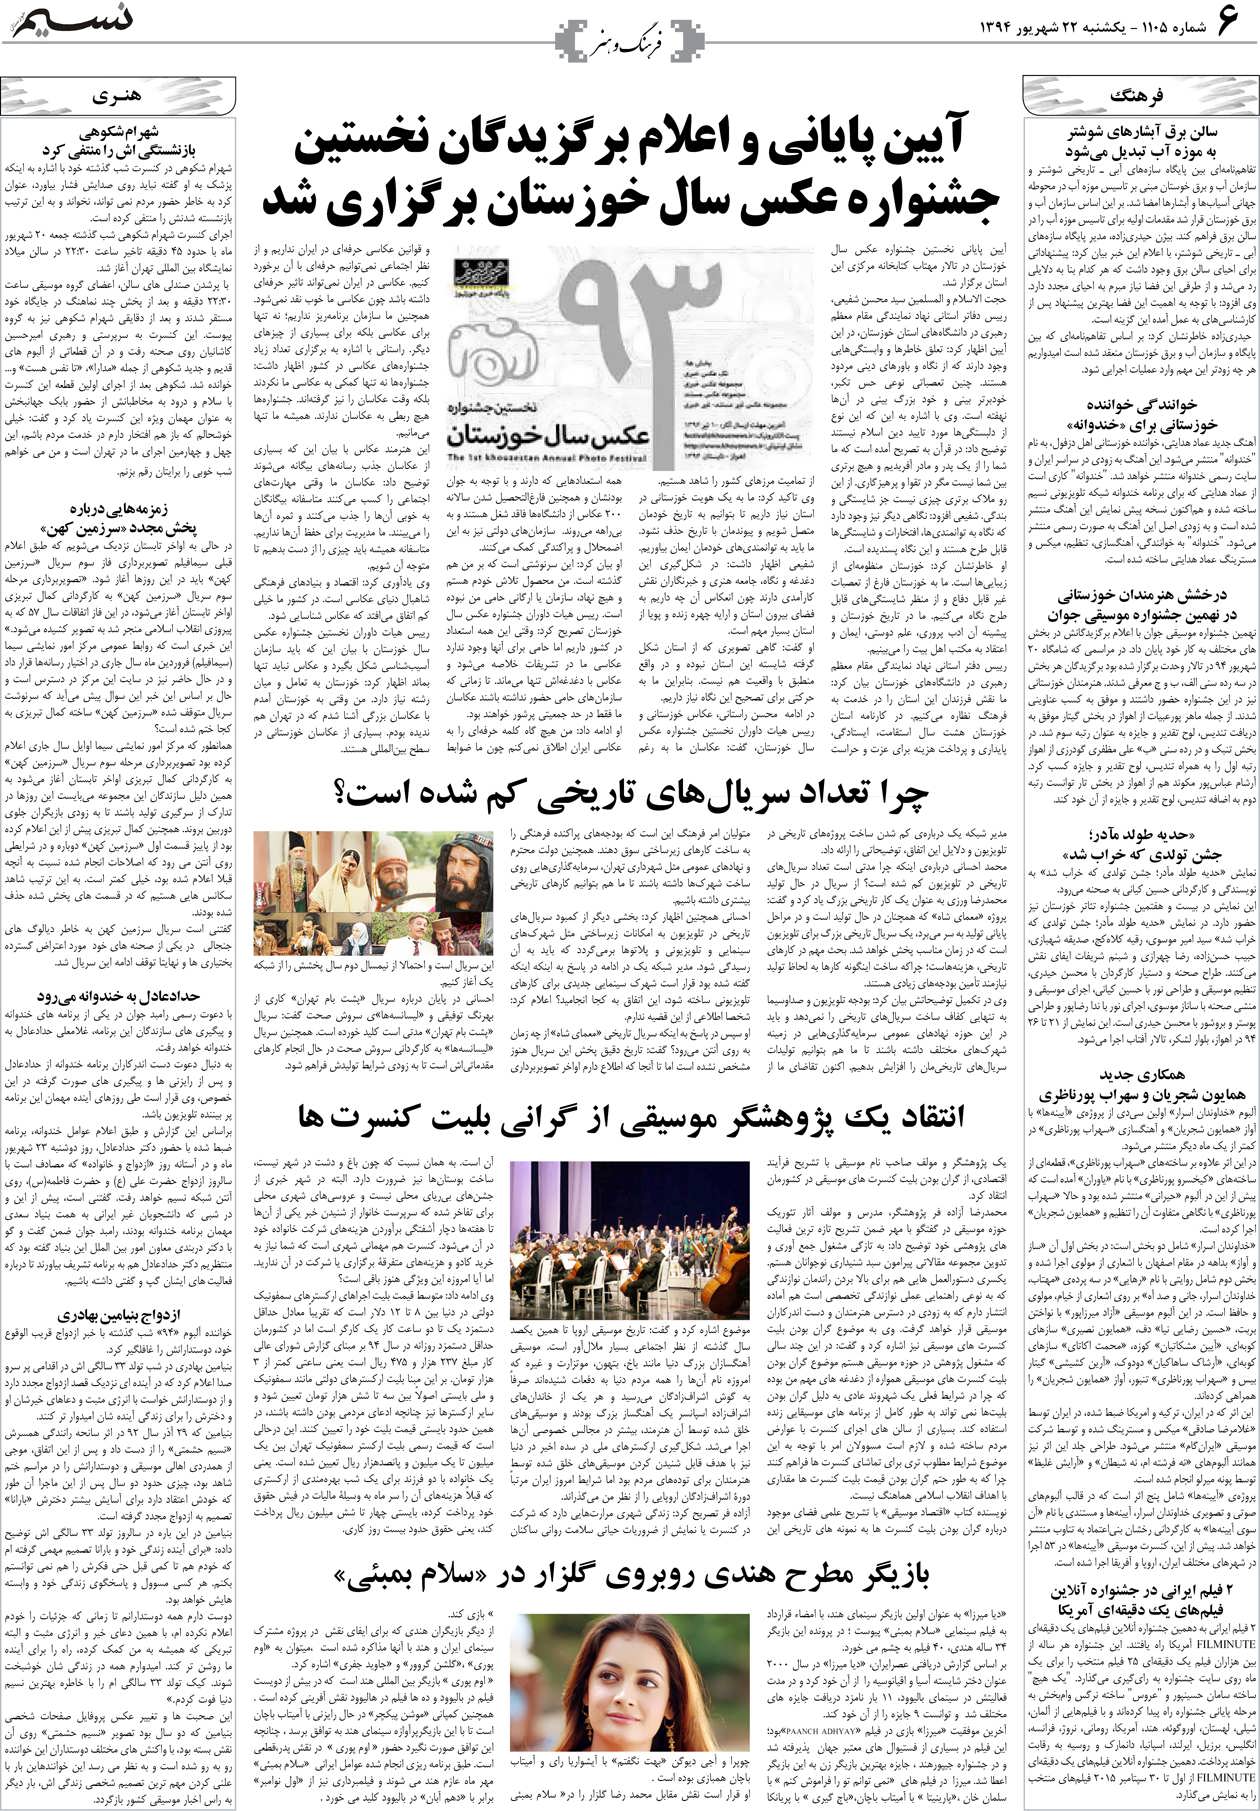 صفحه فرهنگ و هنر روزنامه نسیم شماره 1105